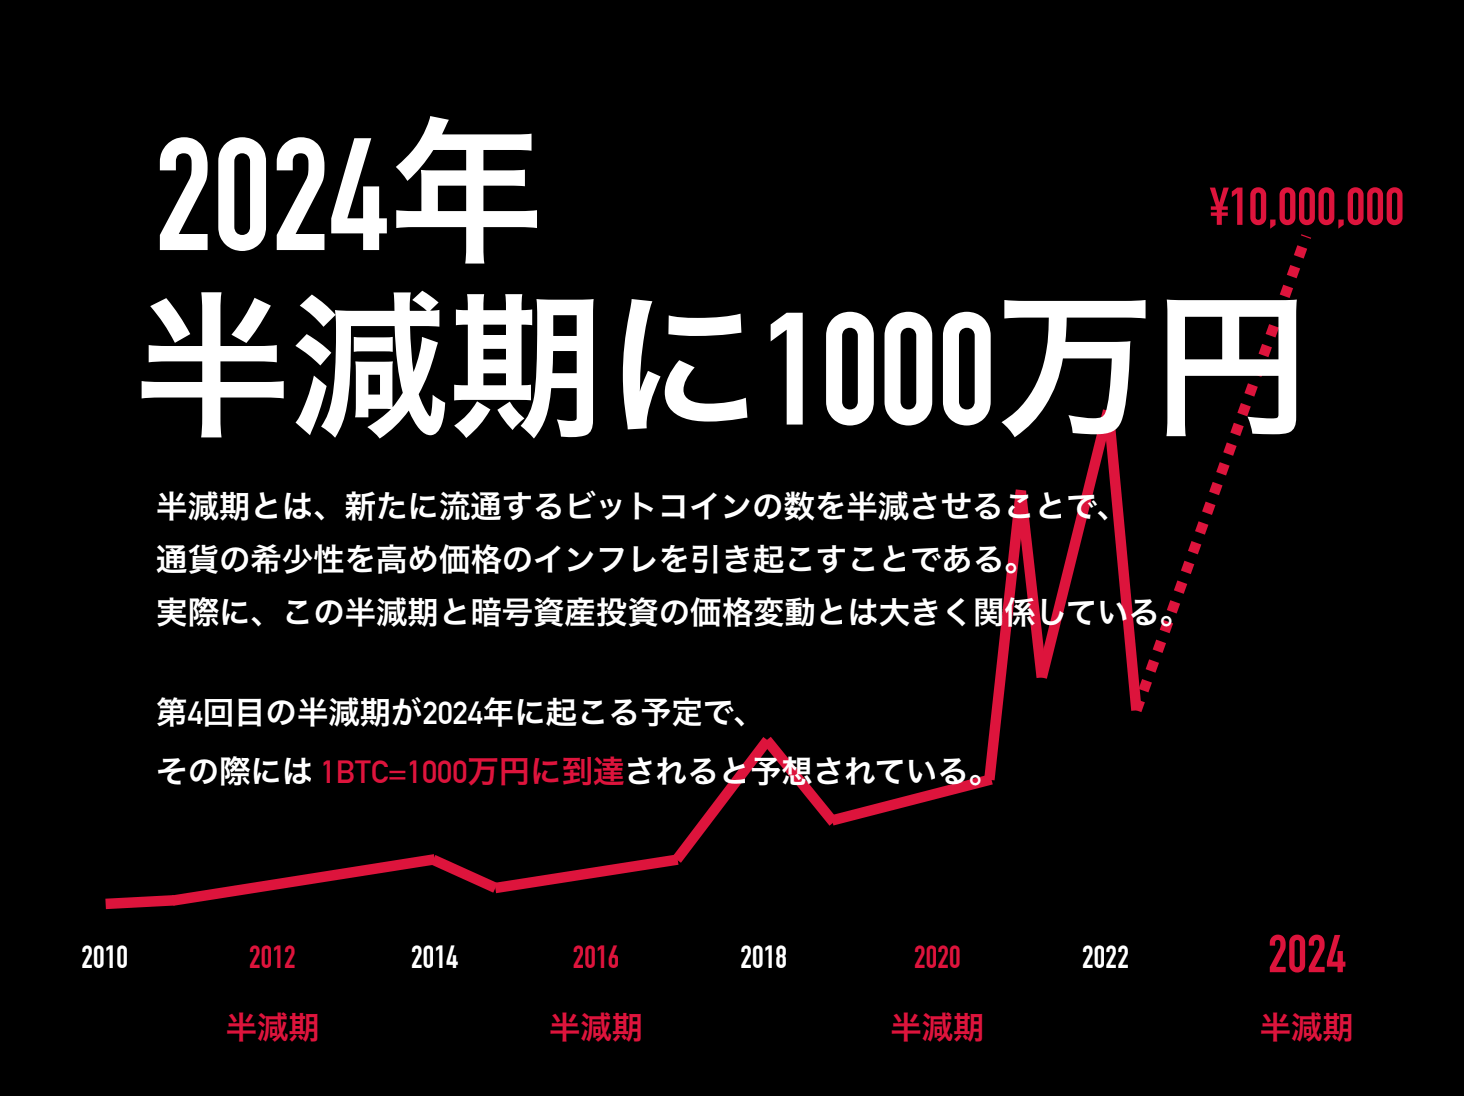 2024年、BTCは半減期で1,000万円と予想